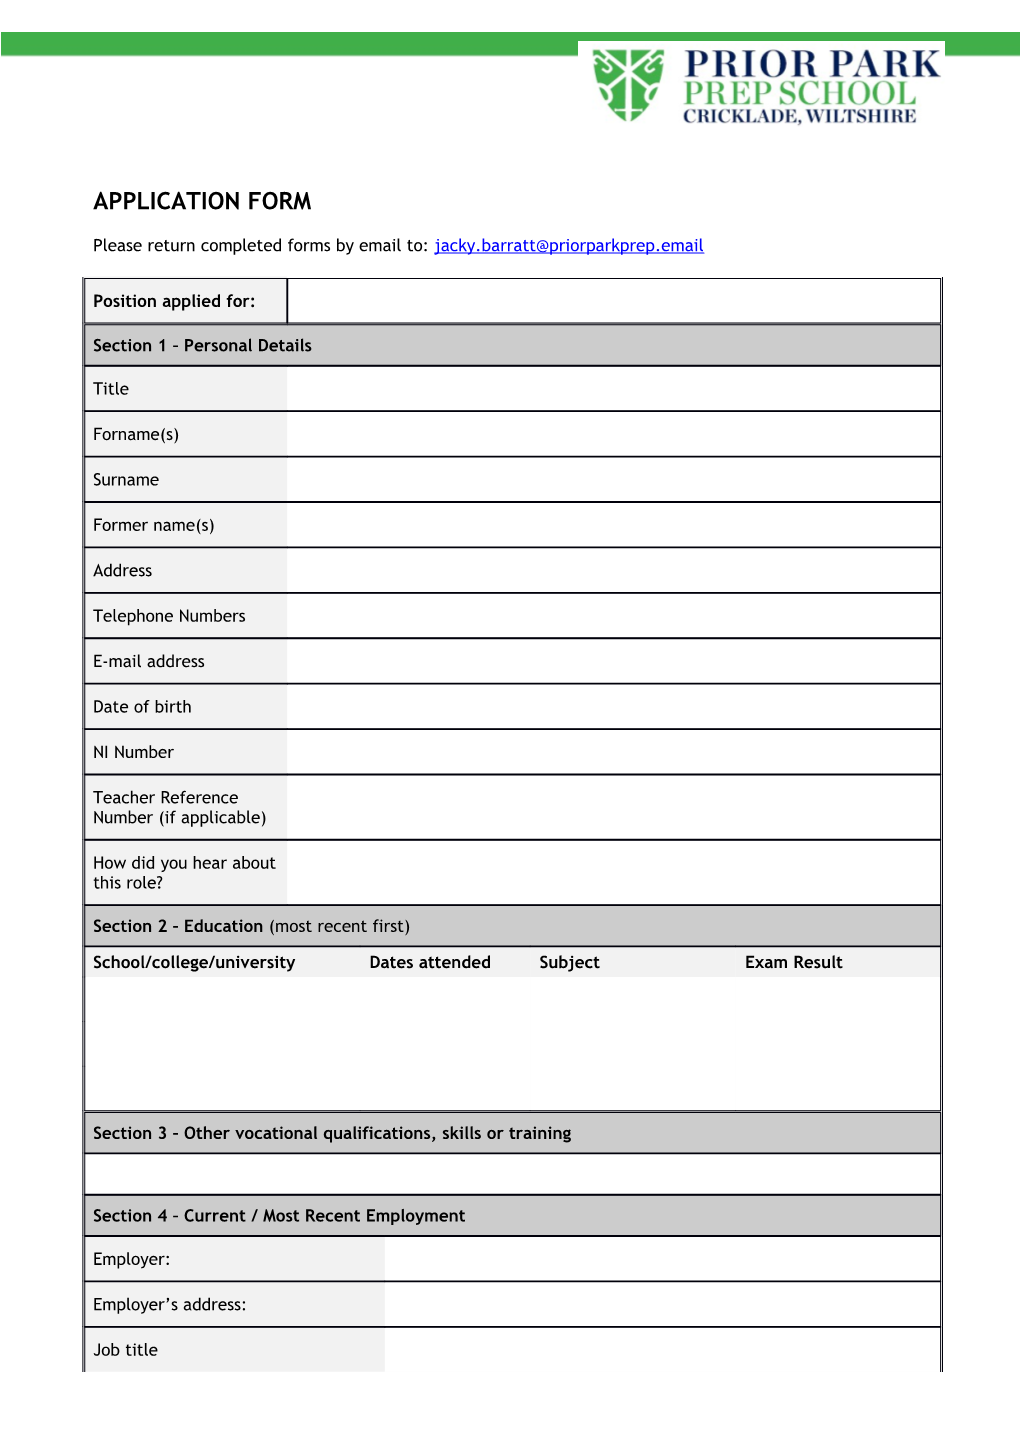 Emp Team: Schools Recruitment - Application Form V2